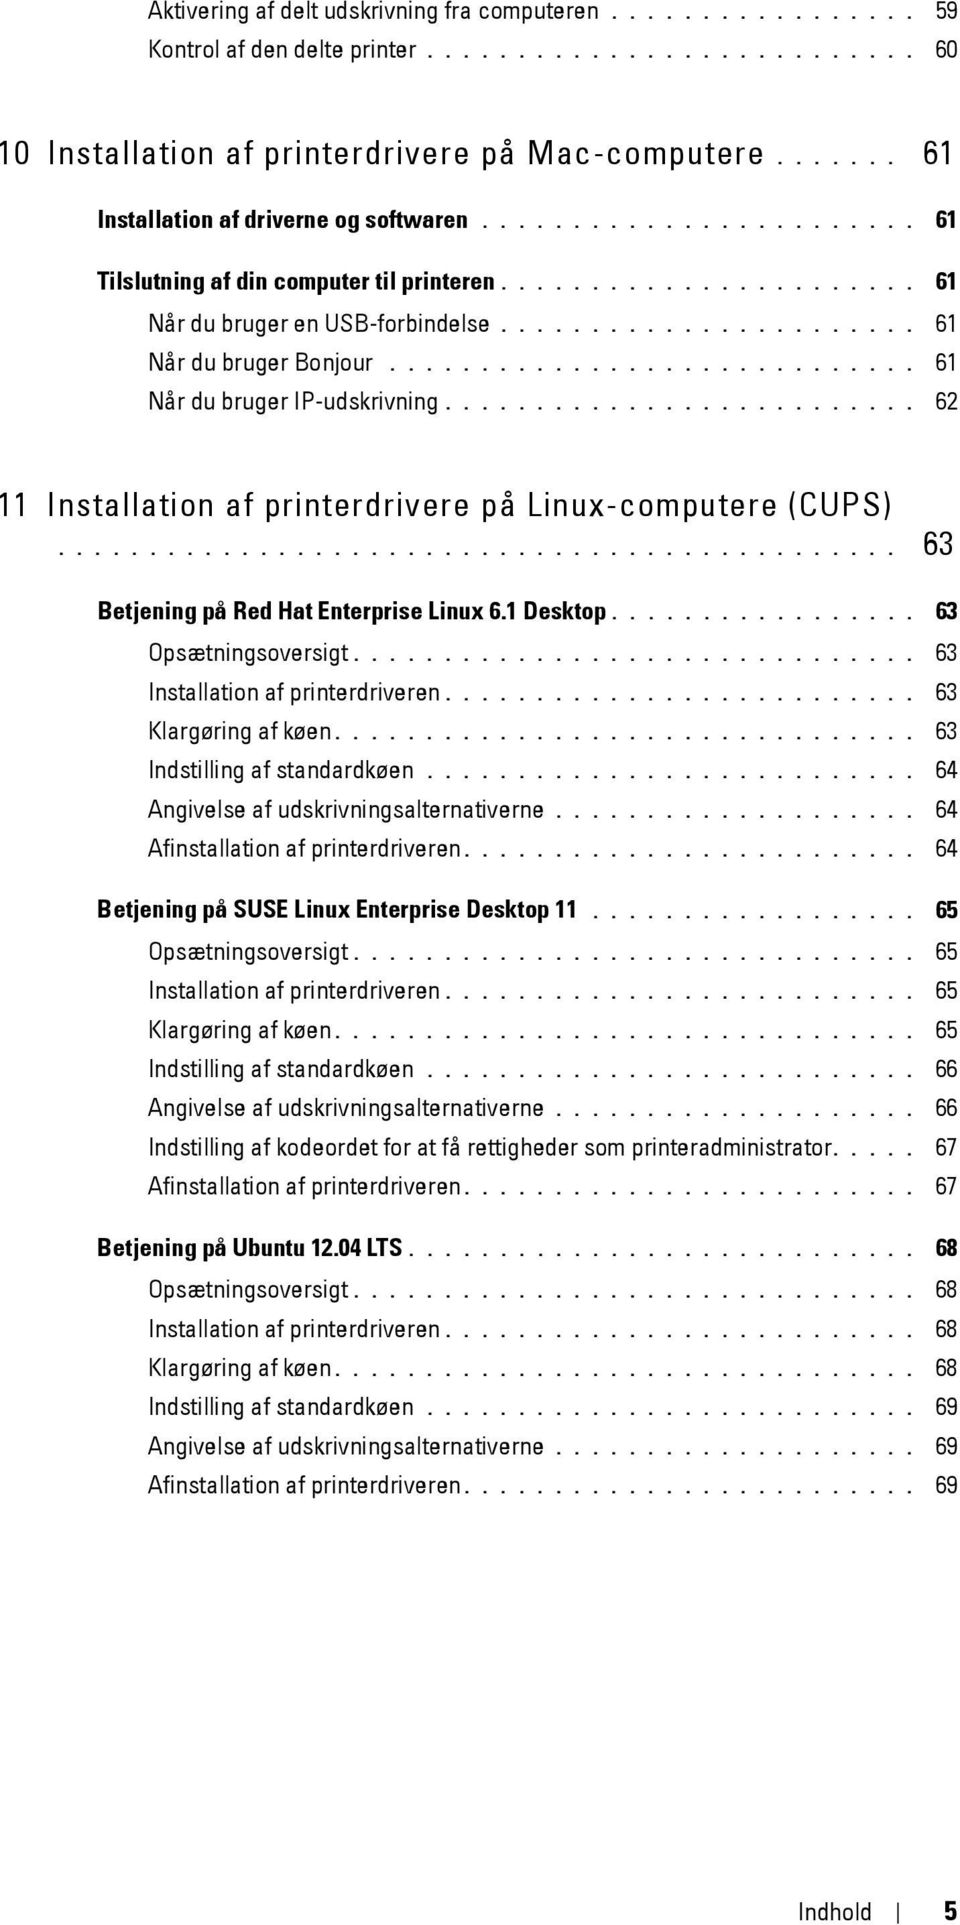 ...................... 61 Når du bruger Bonjour............................. 61 Når du bruger IP-udskrivning.......................... 62 11 Installation af printerdrivere på Linux-computere (CUPS).